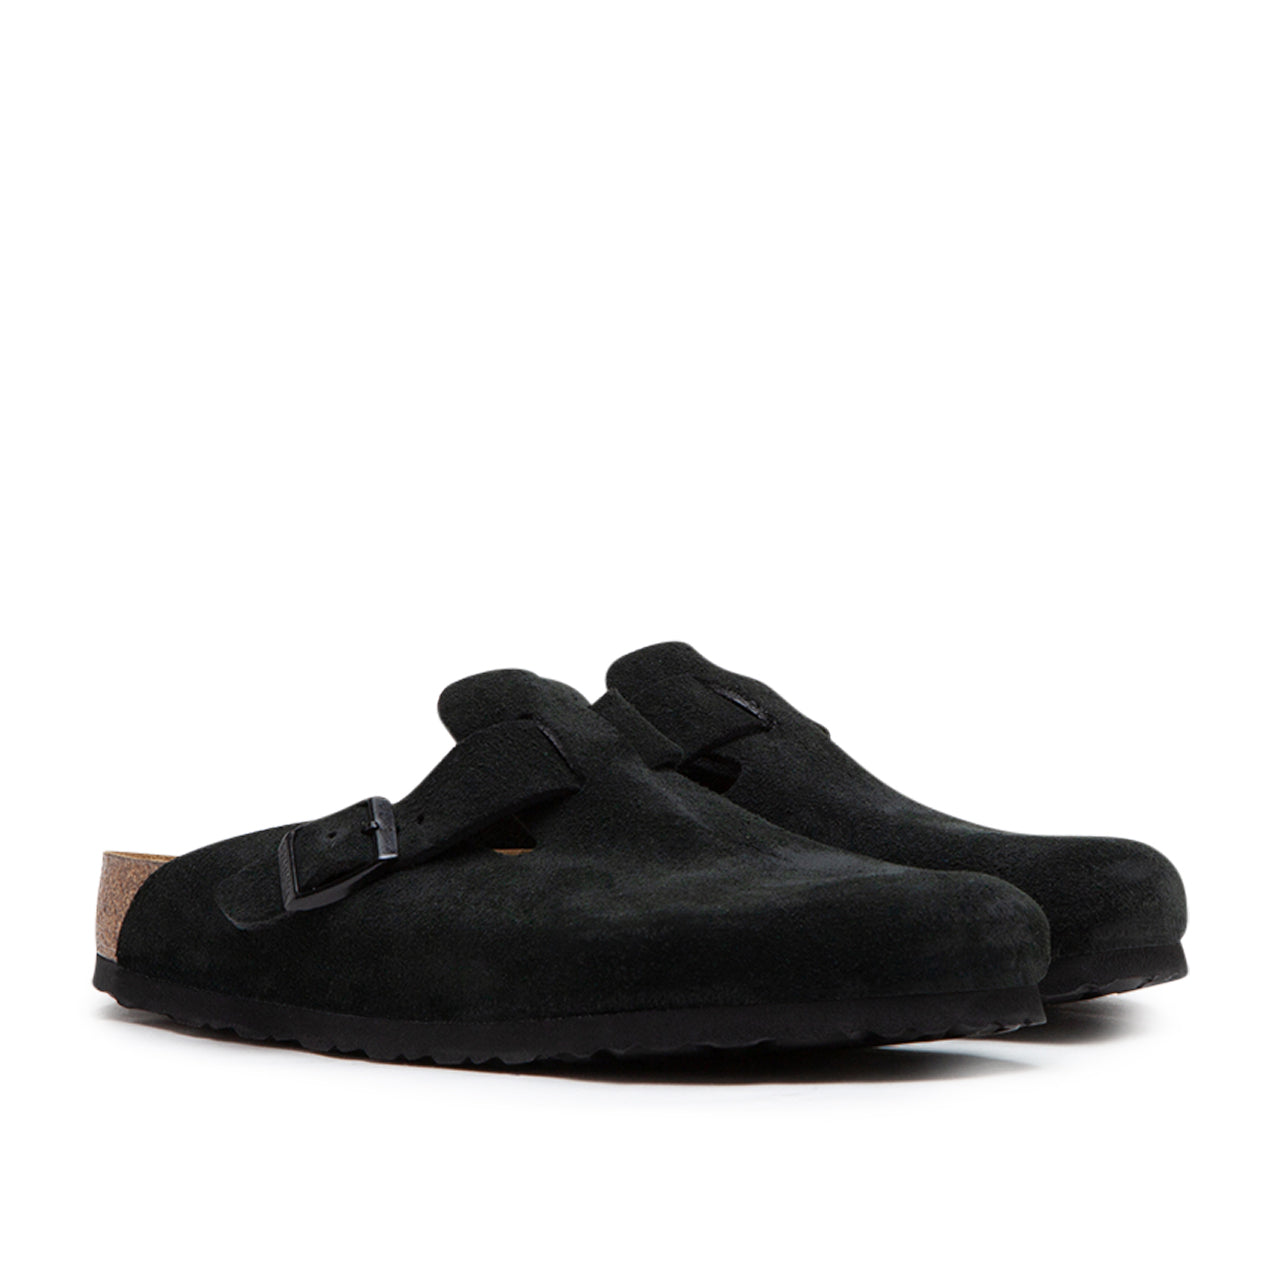 Birkenstock Boston Soft Footbed Suede Leather (Schwarz)  - Allike Store